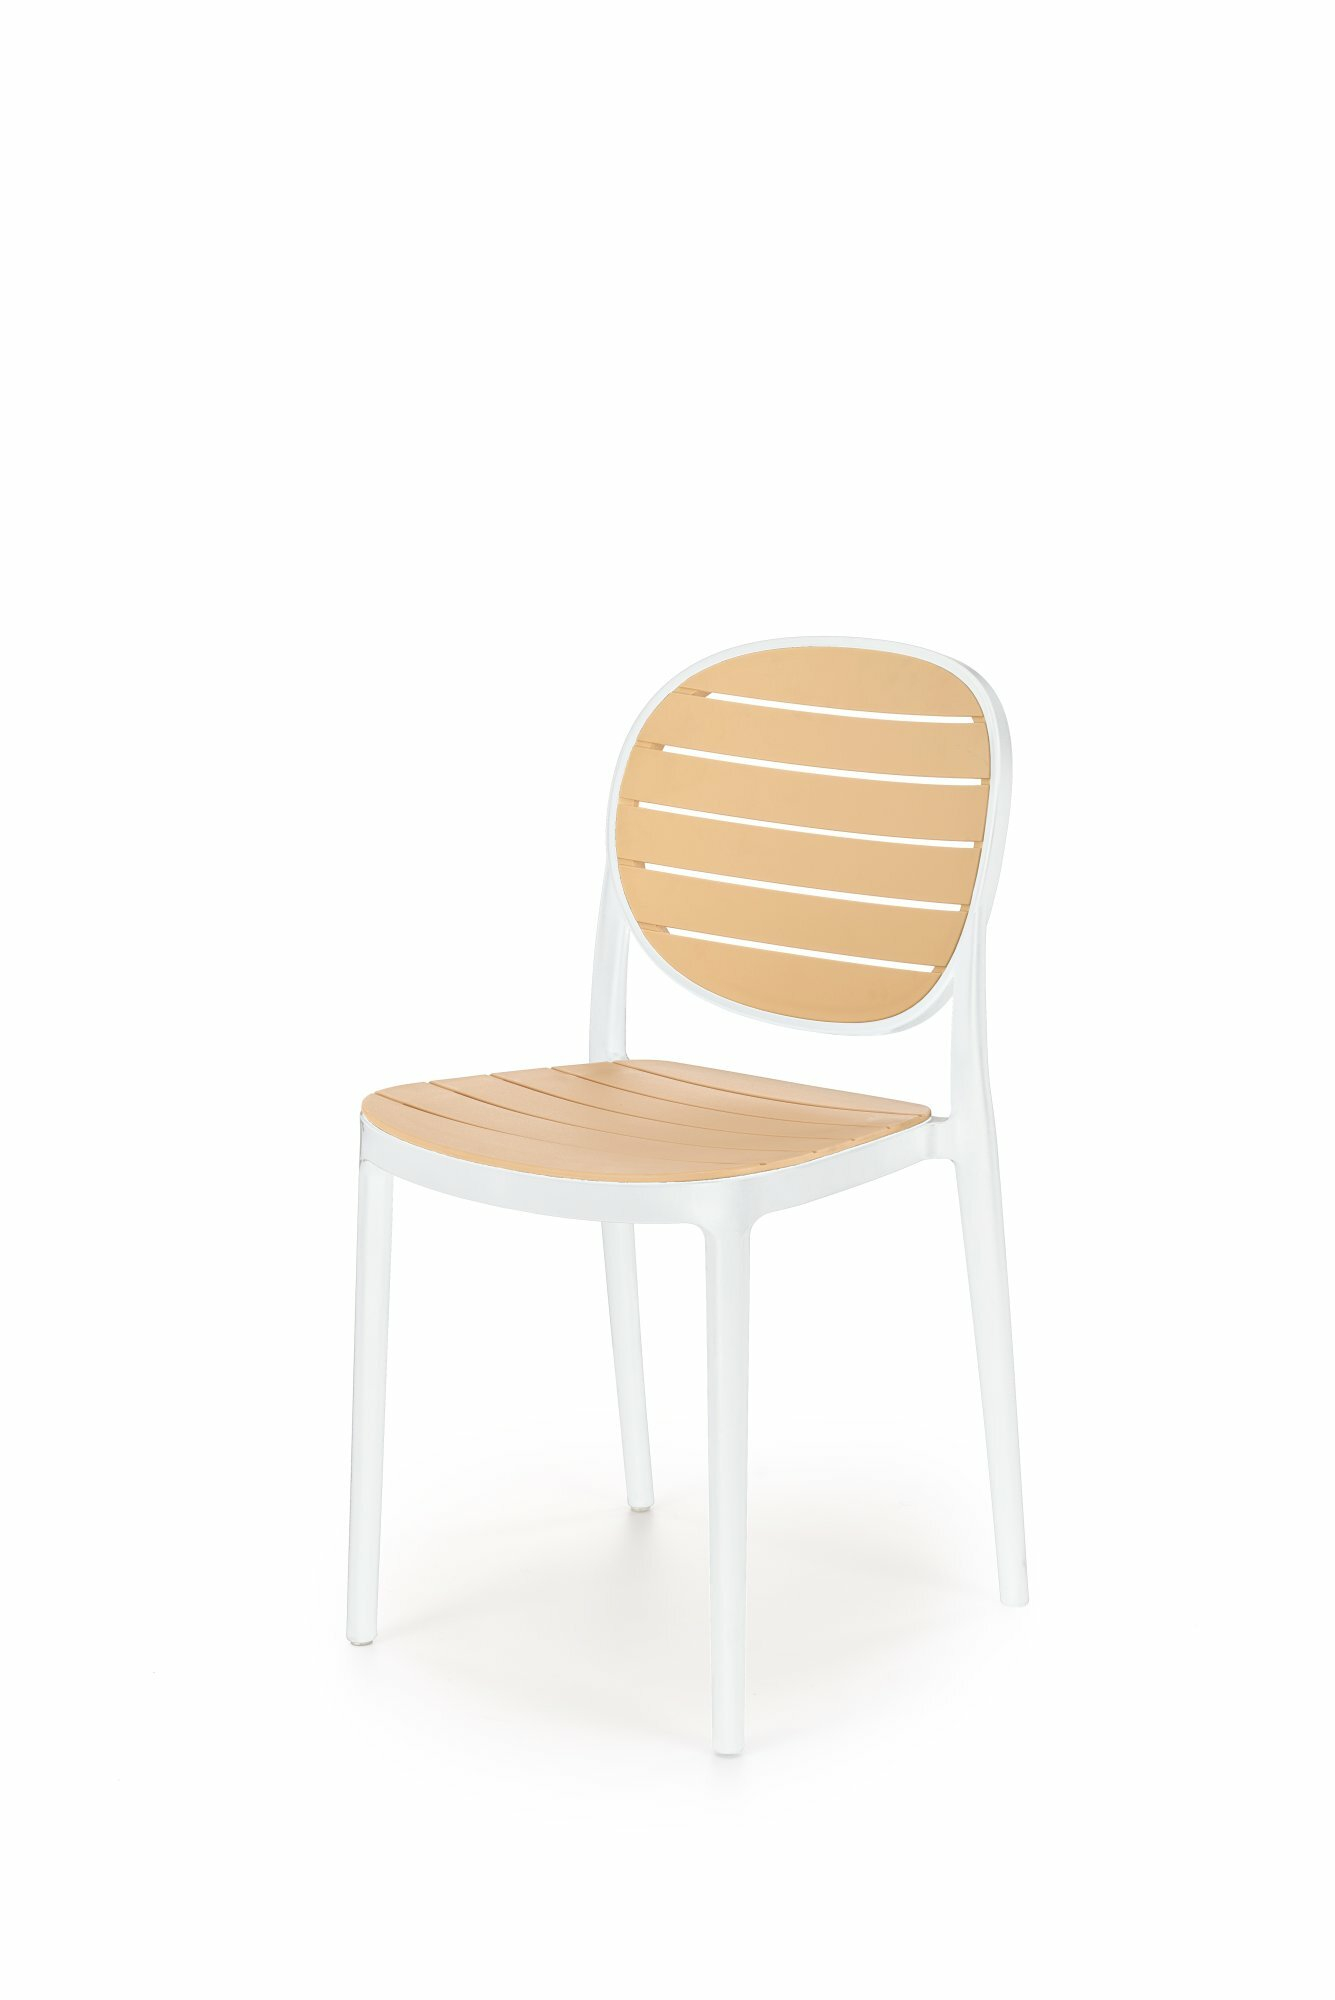 K529 krzesło biały / naturalny